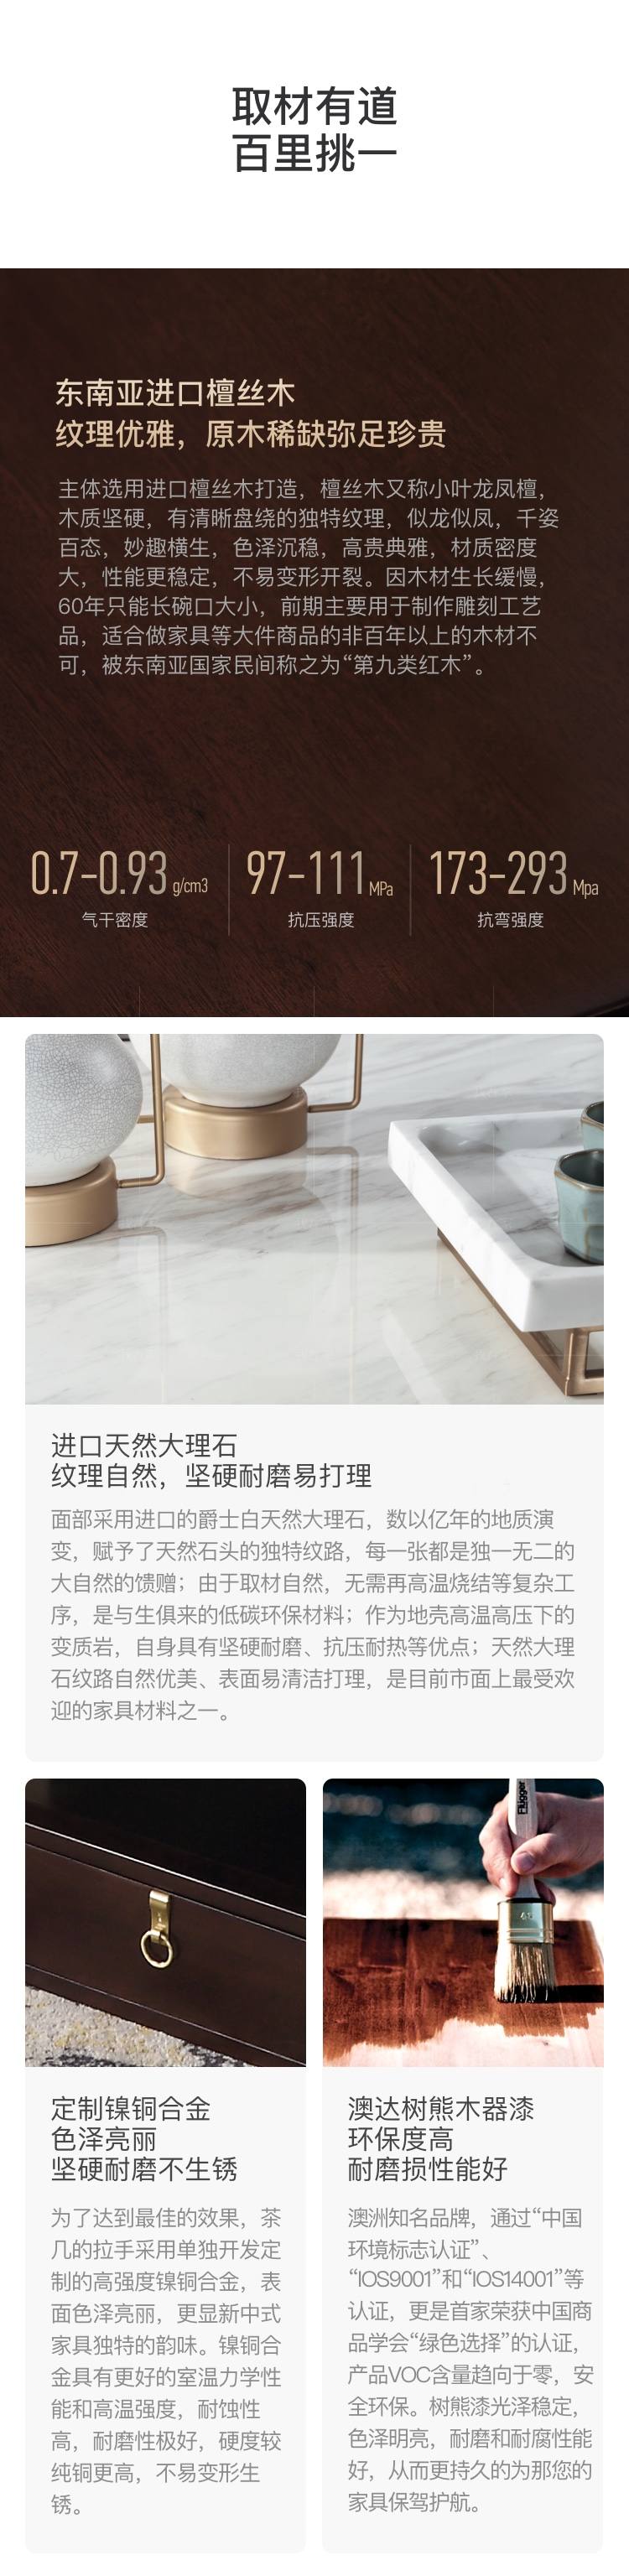 新中式风格似锦茶几（样品特惠）的家具详细介绍